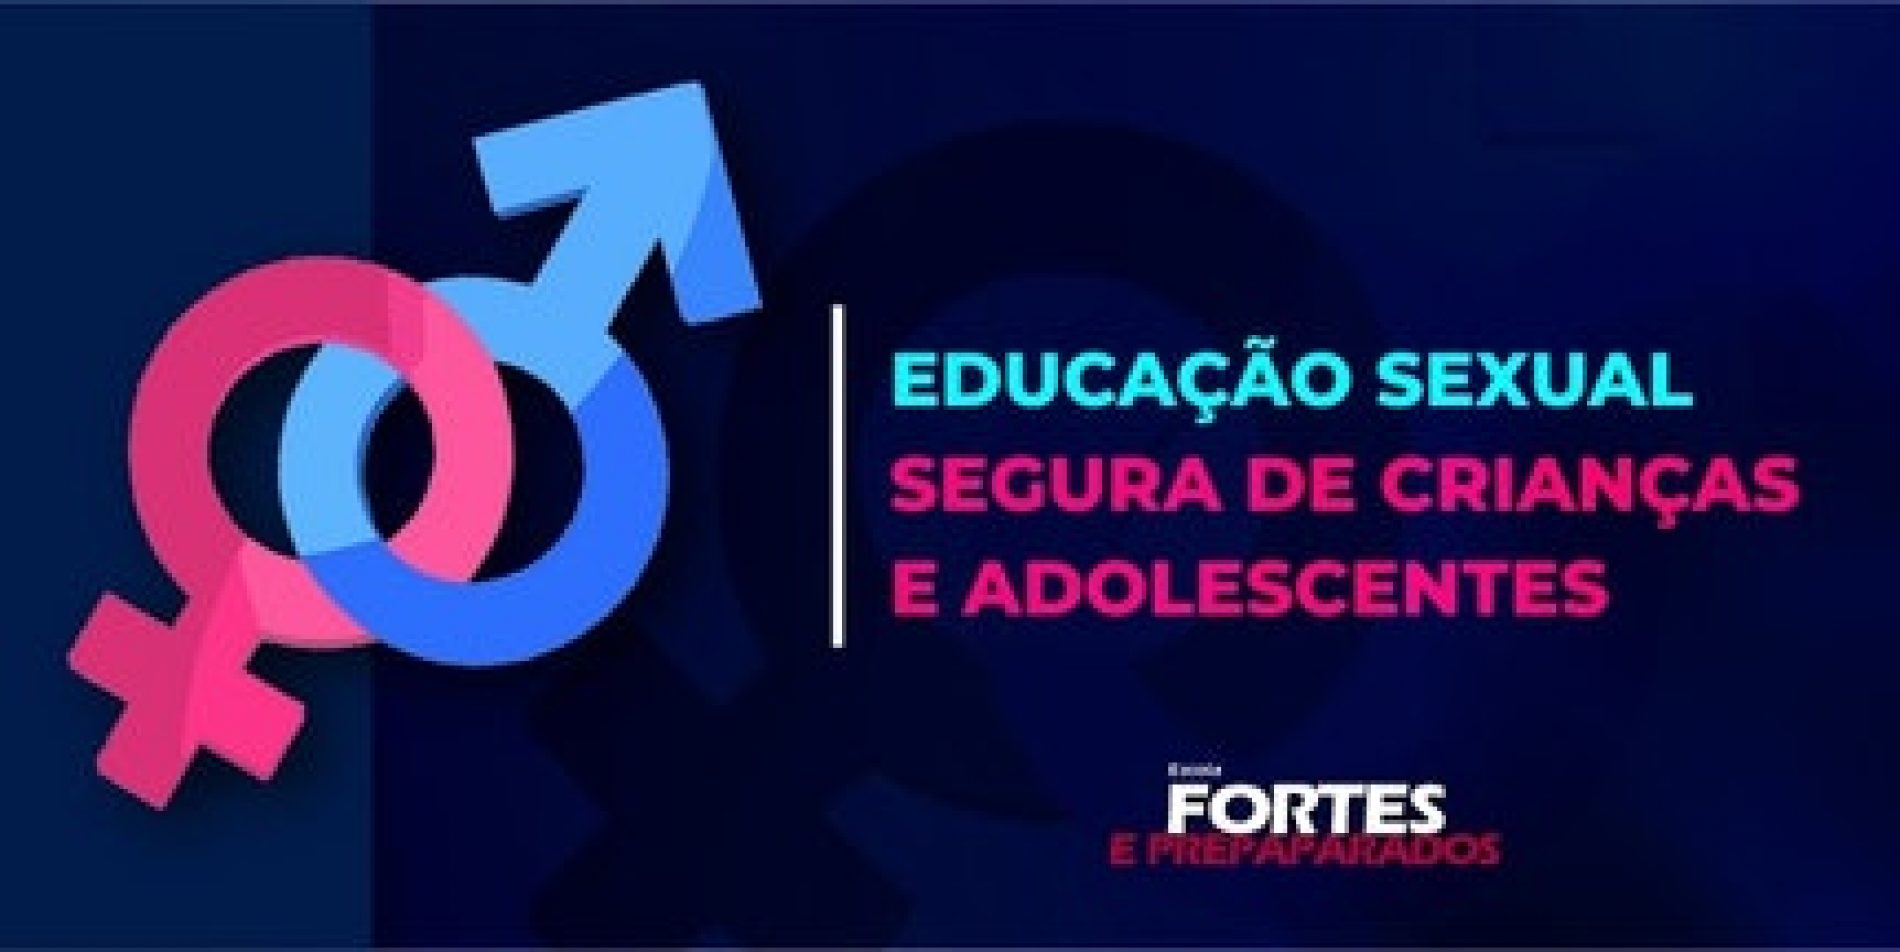 Plataforma – Educação sexual segura de crianças e adolescentes